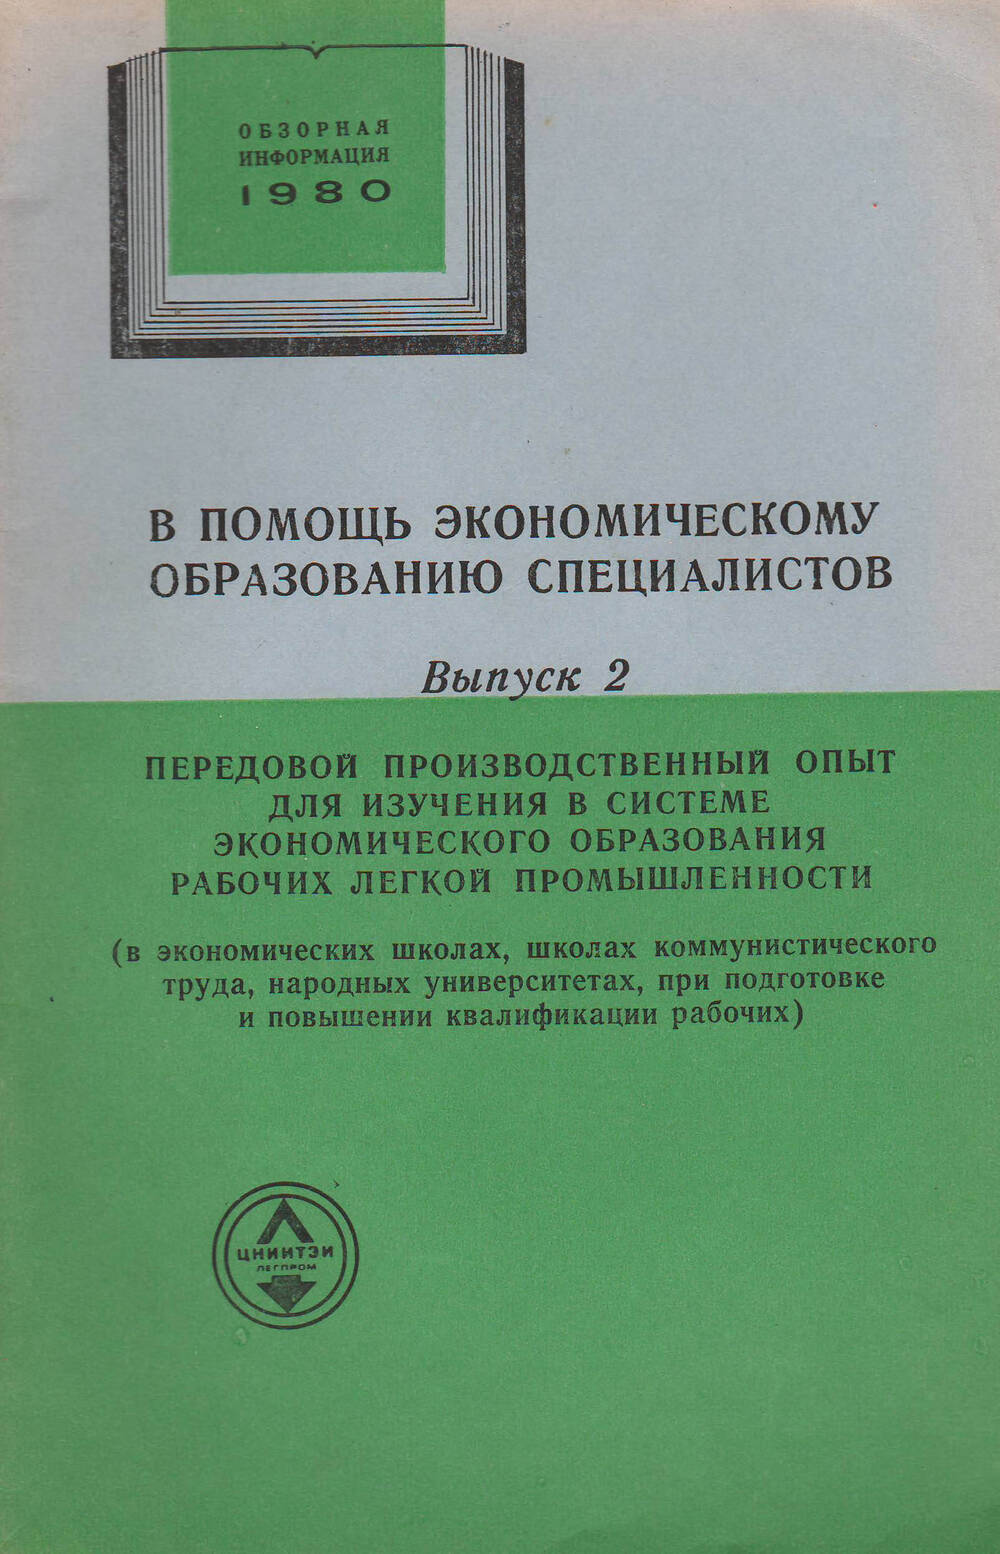 Брошюра В помощь экономическому образованию специалистов, выпуск 2, 1980 год.